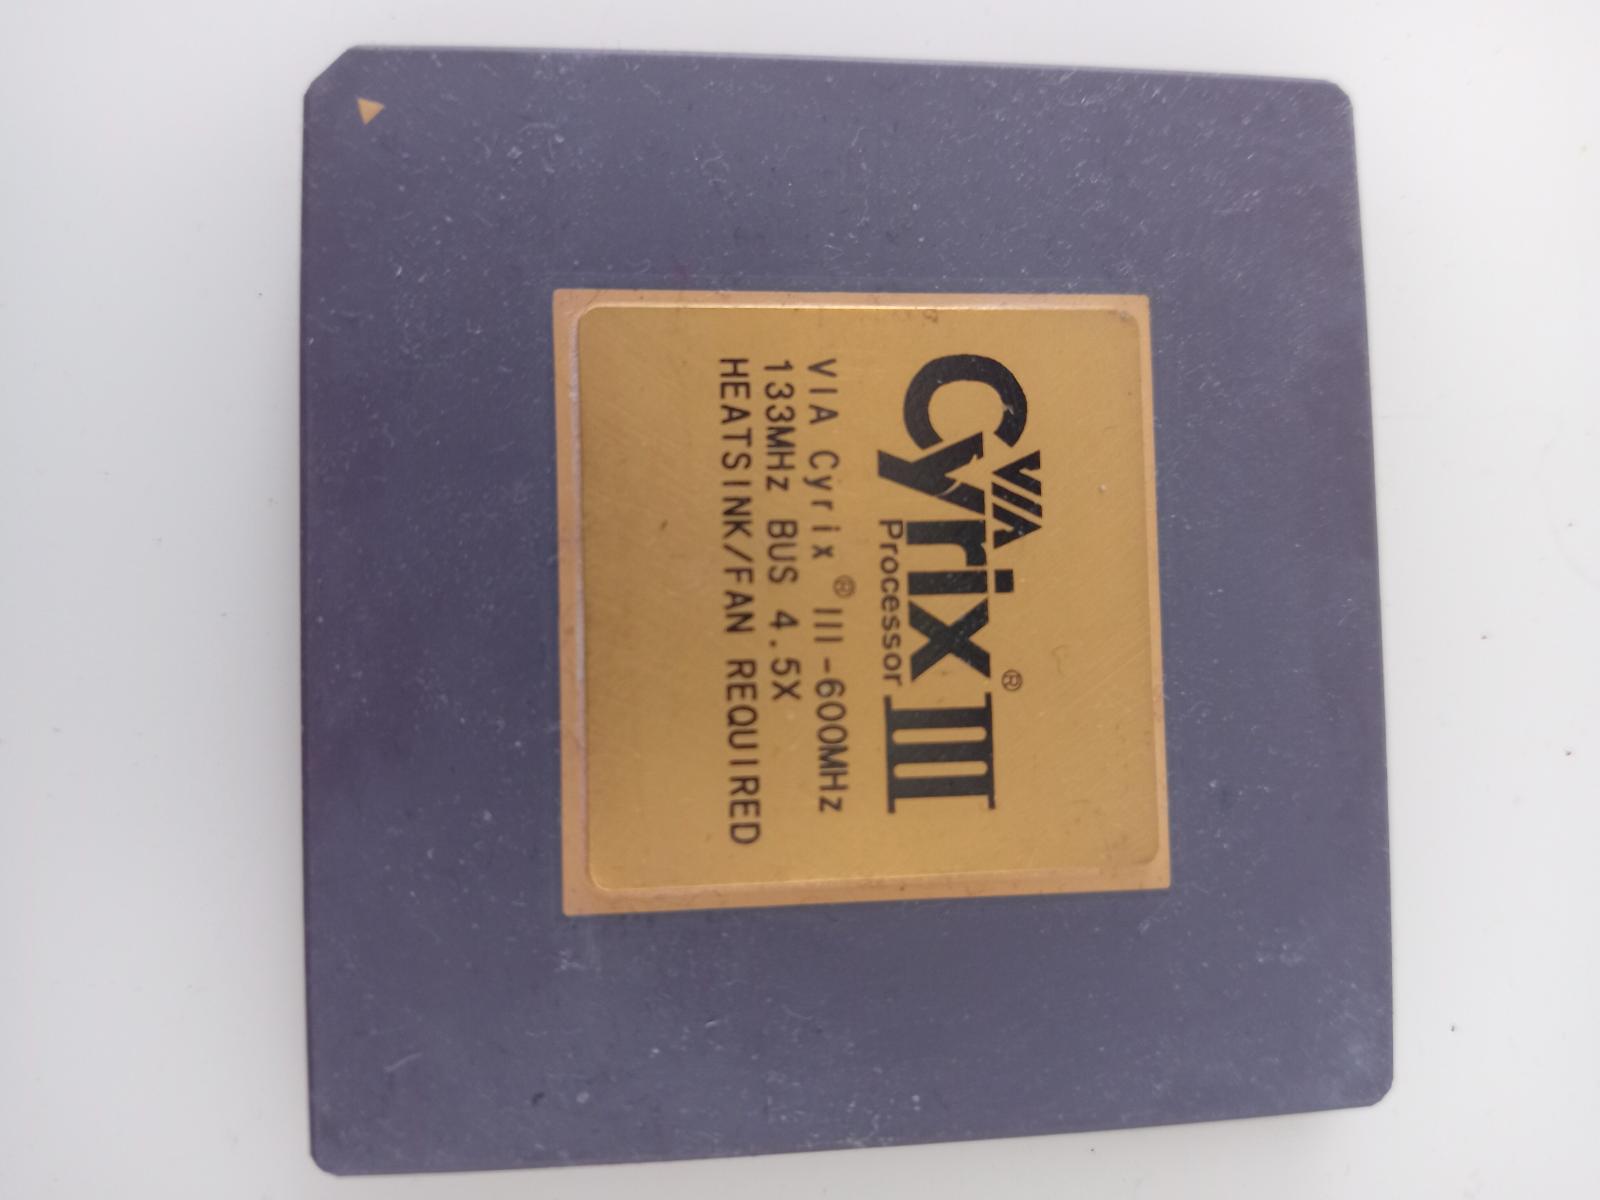 Procesor Cyrix III 60OMHz - Počítače a hry